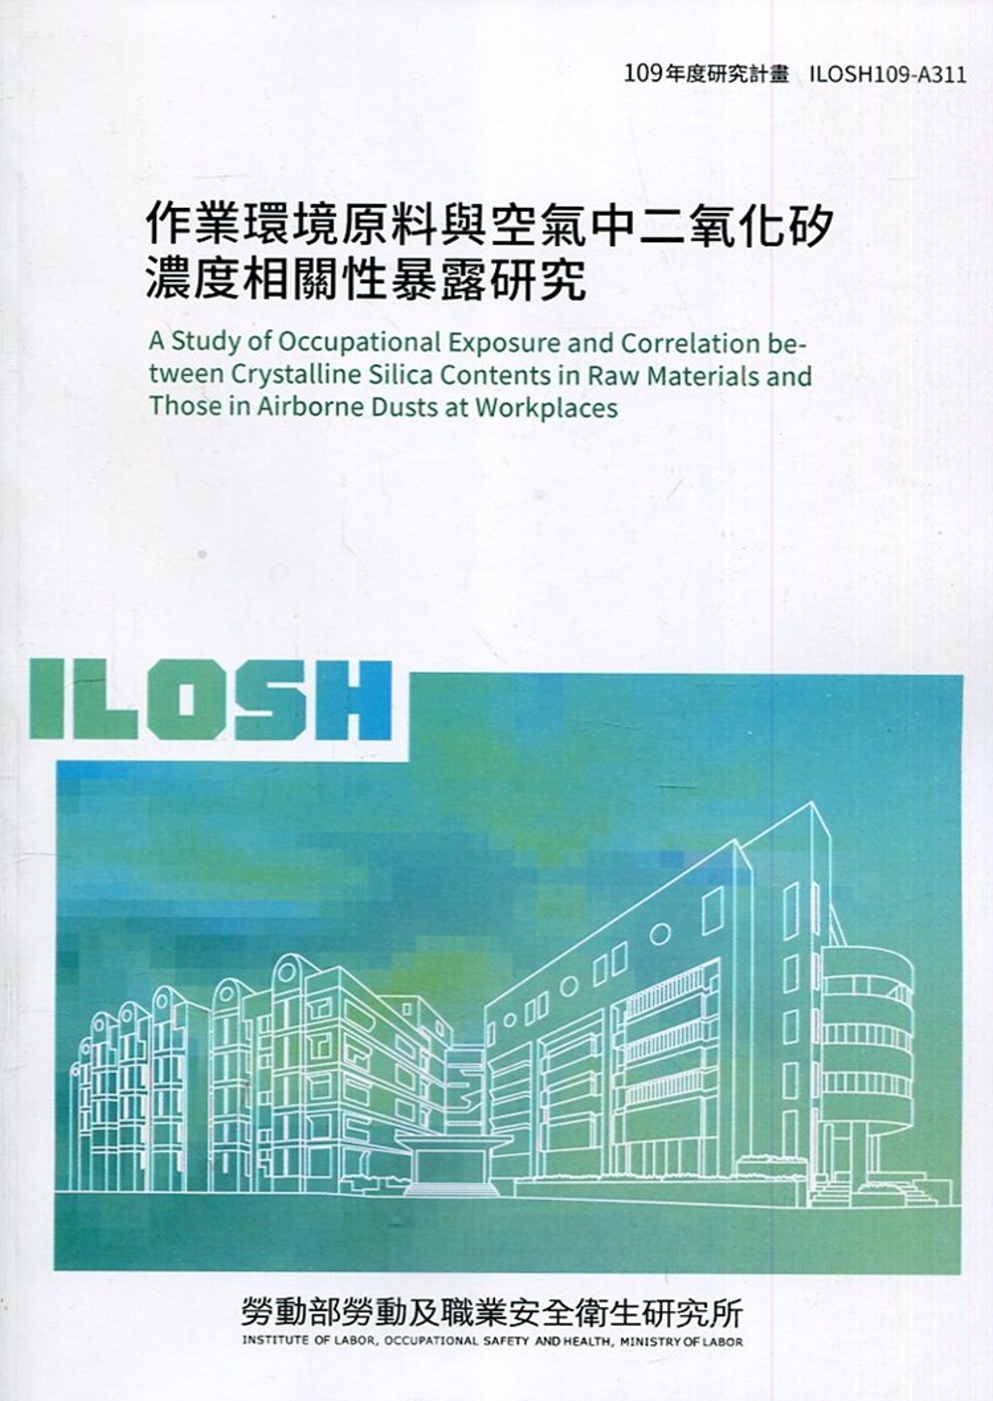 作業環境原料與空氣中二氧化矽濃度相關性暴露研究 ILOSH1...